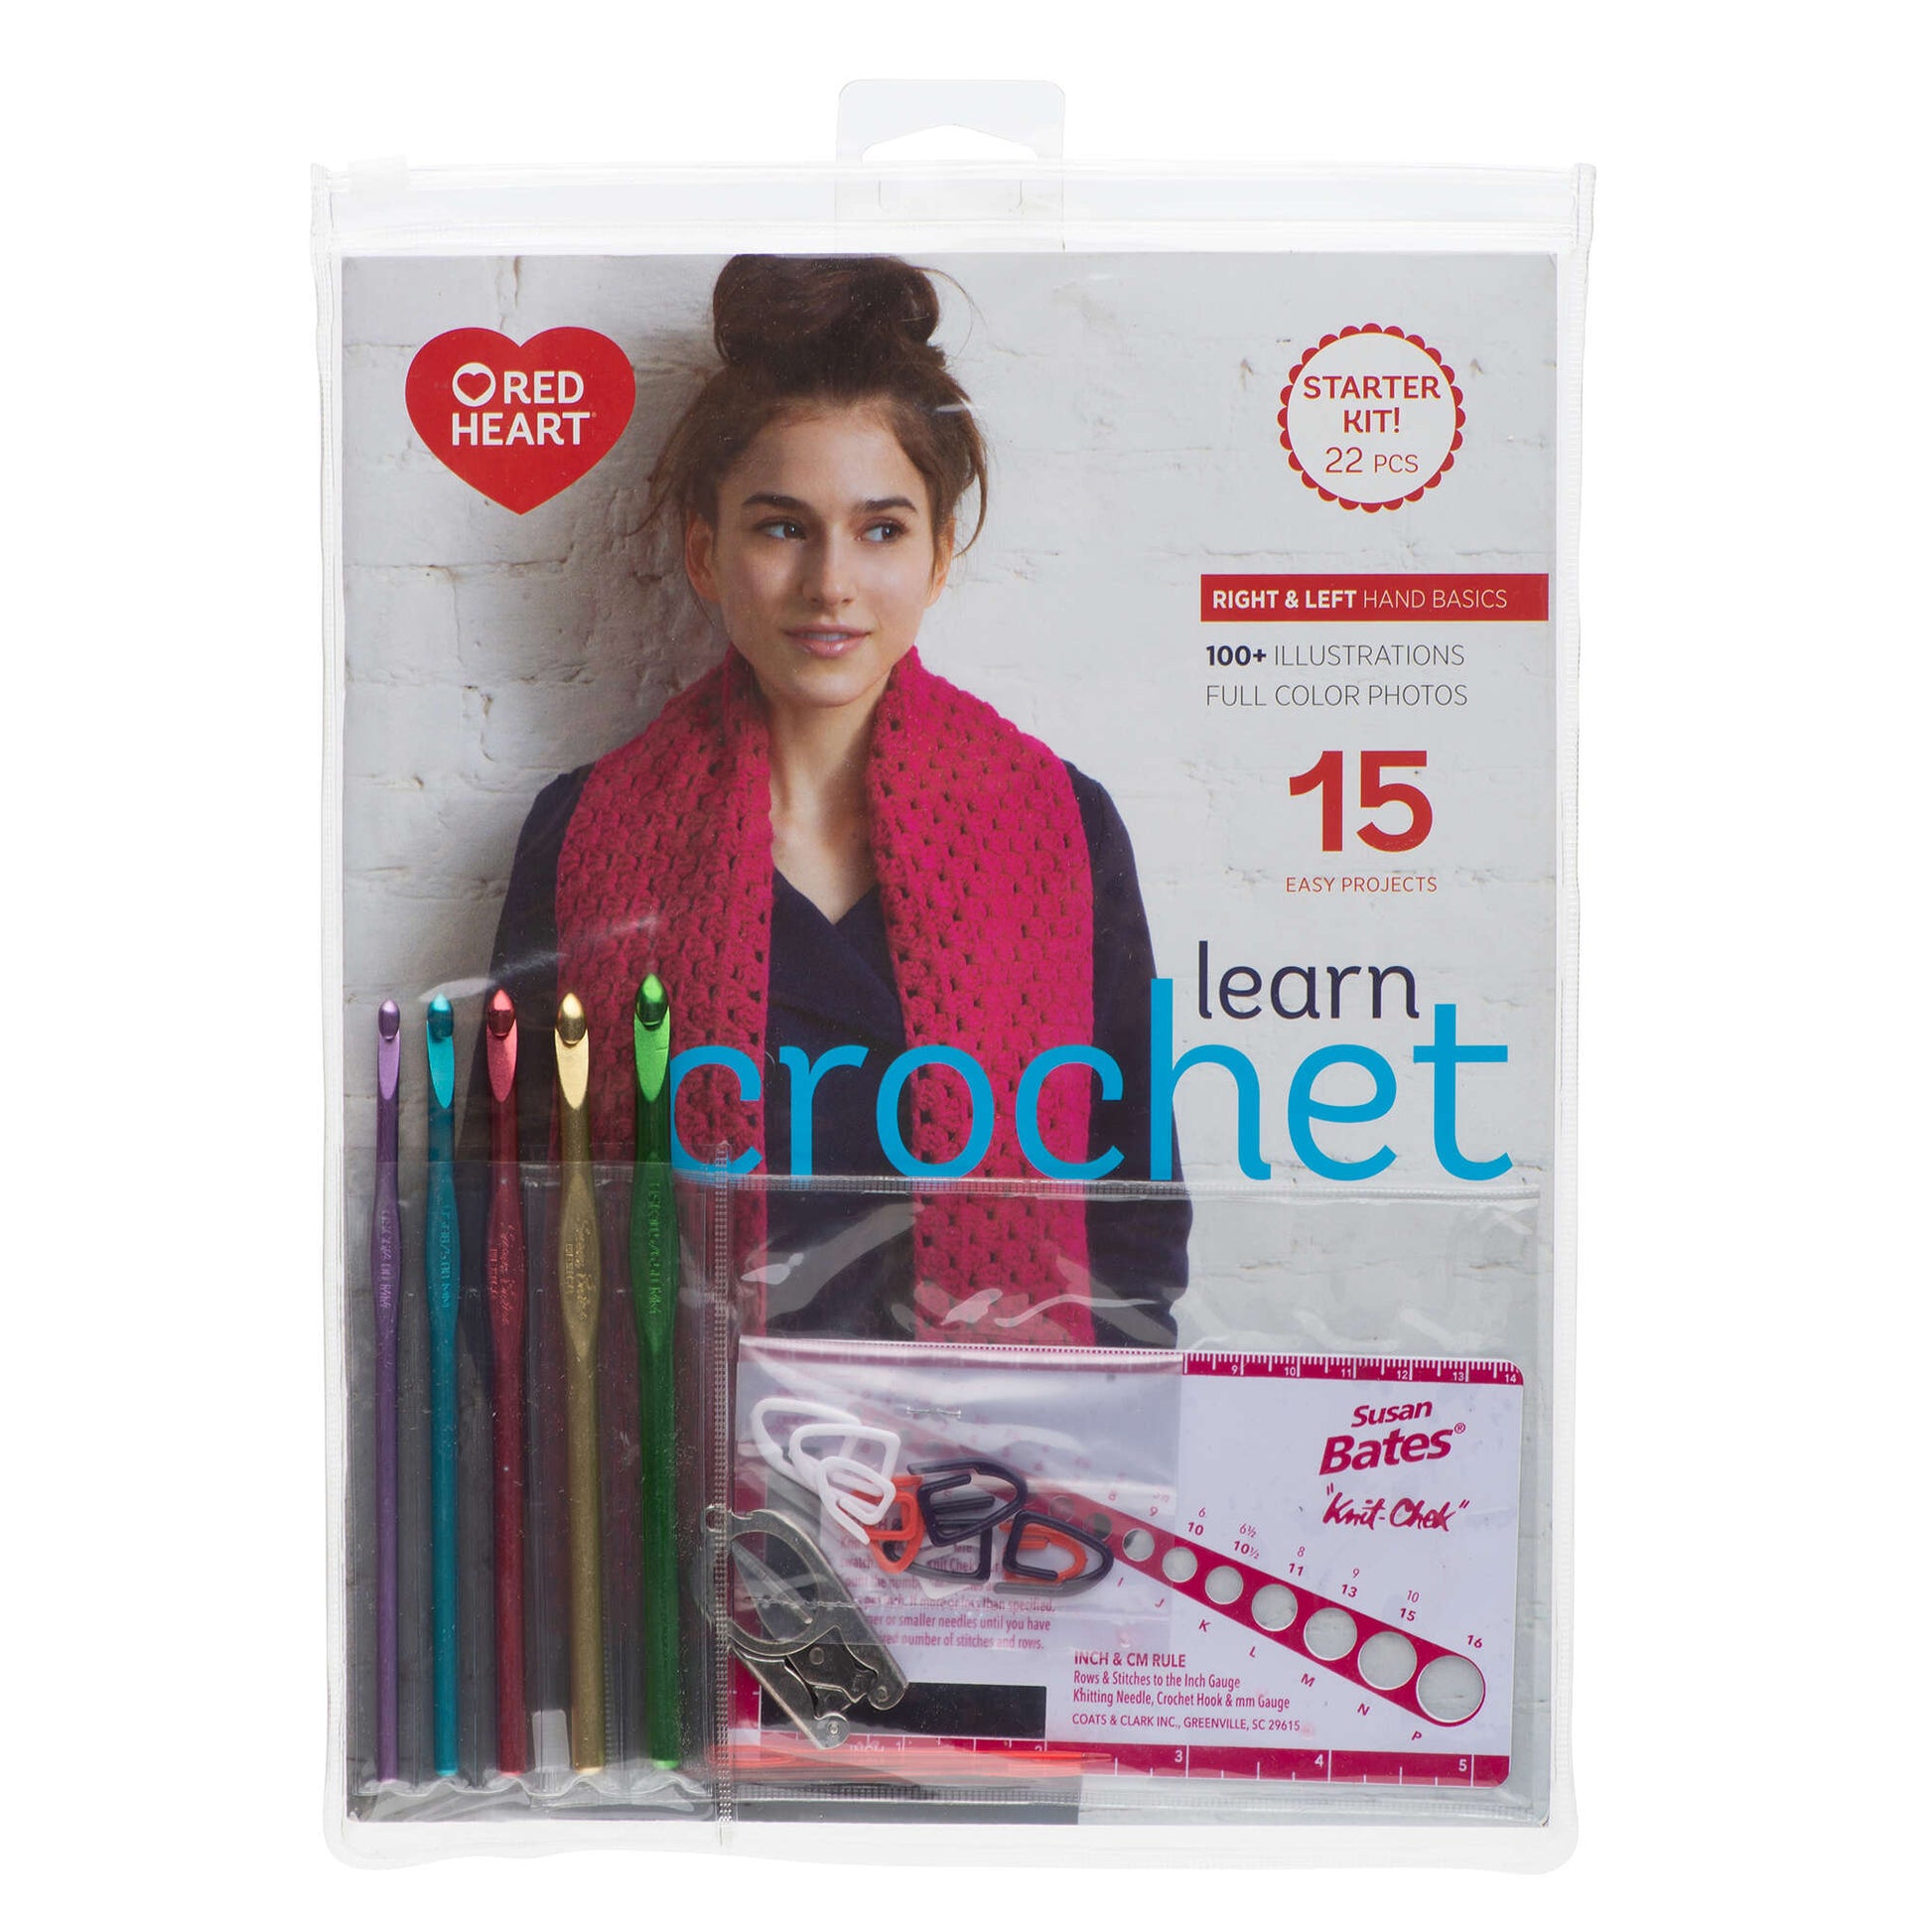 Learn to Crochet Kits